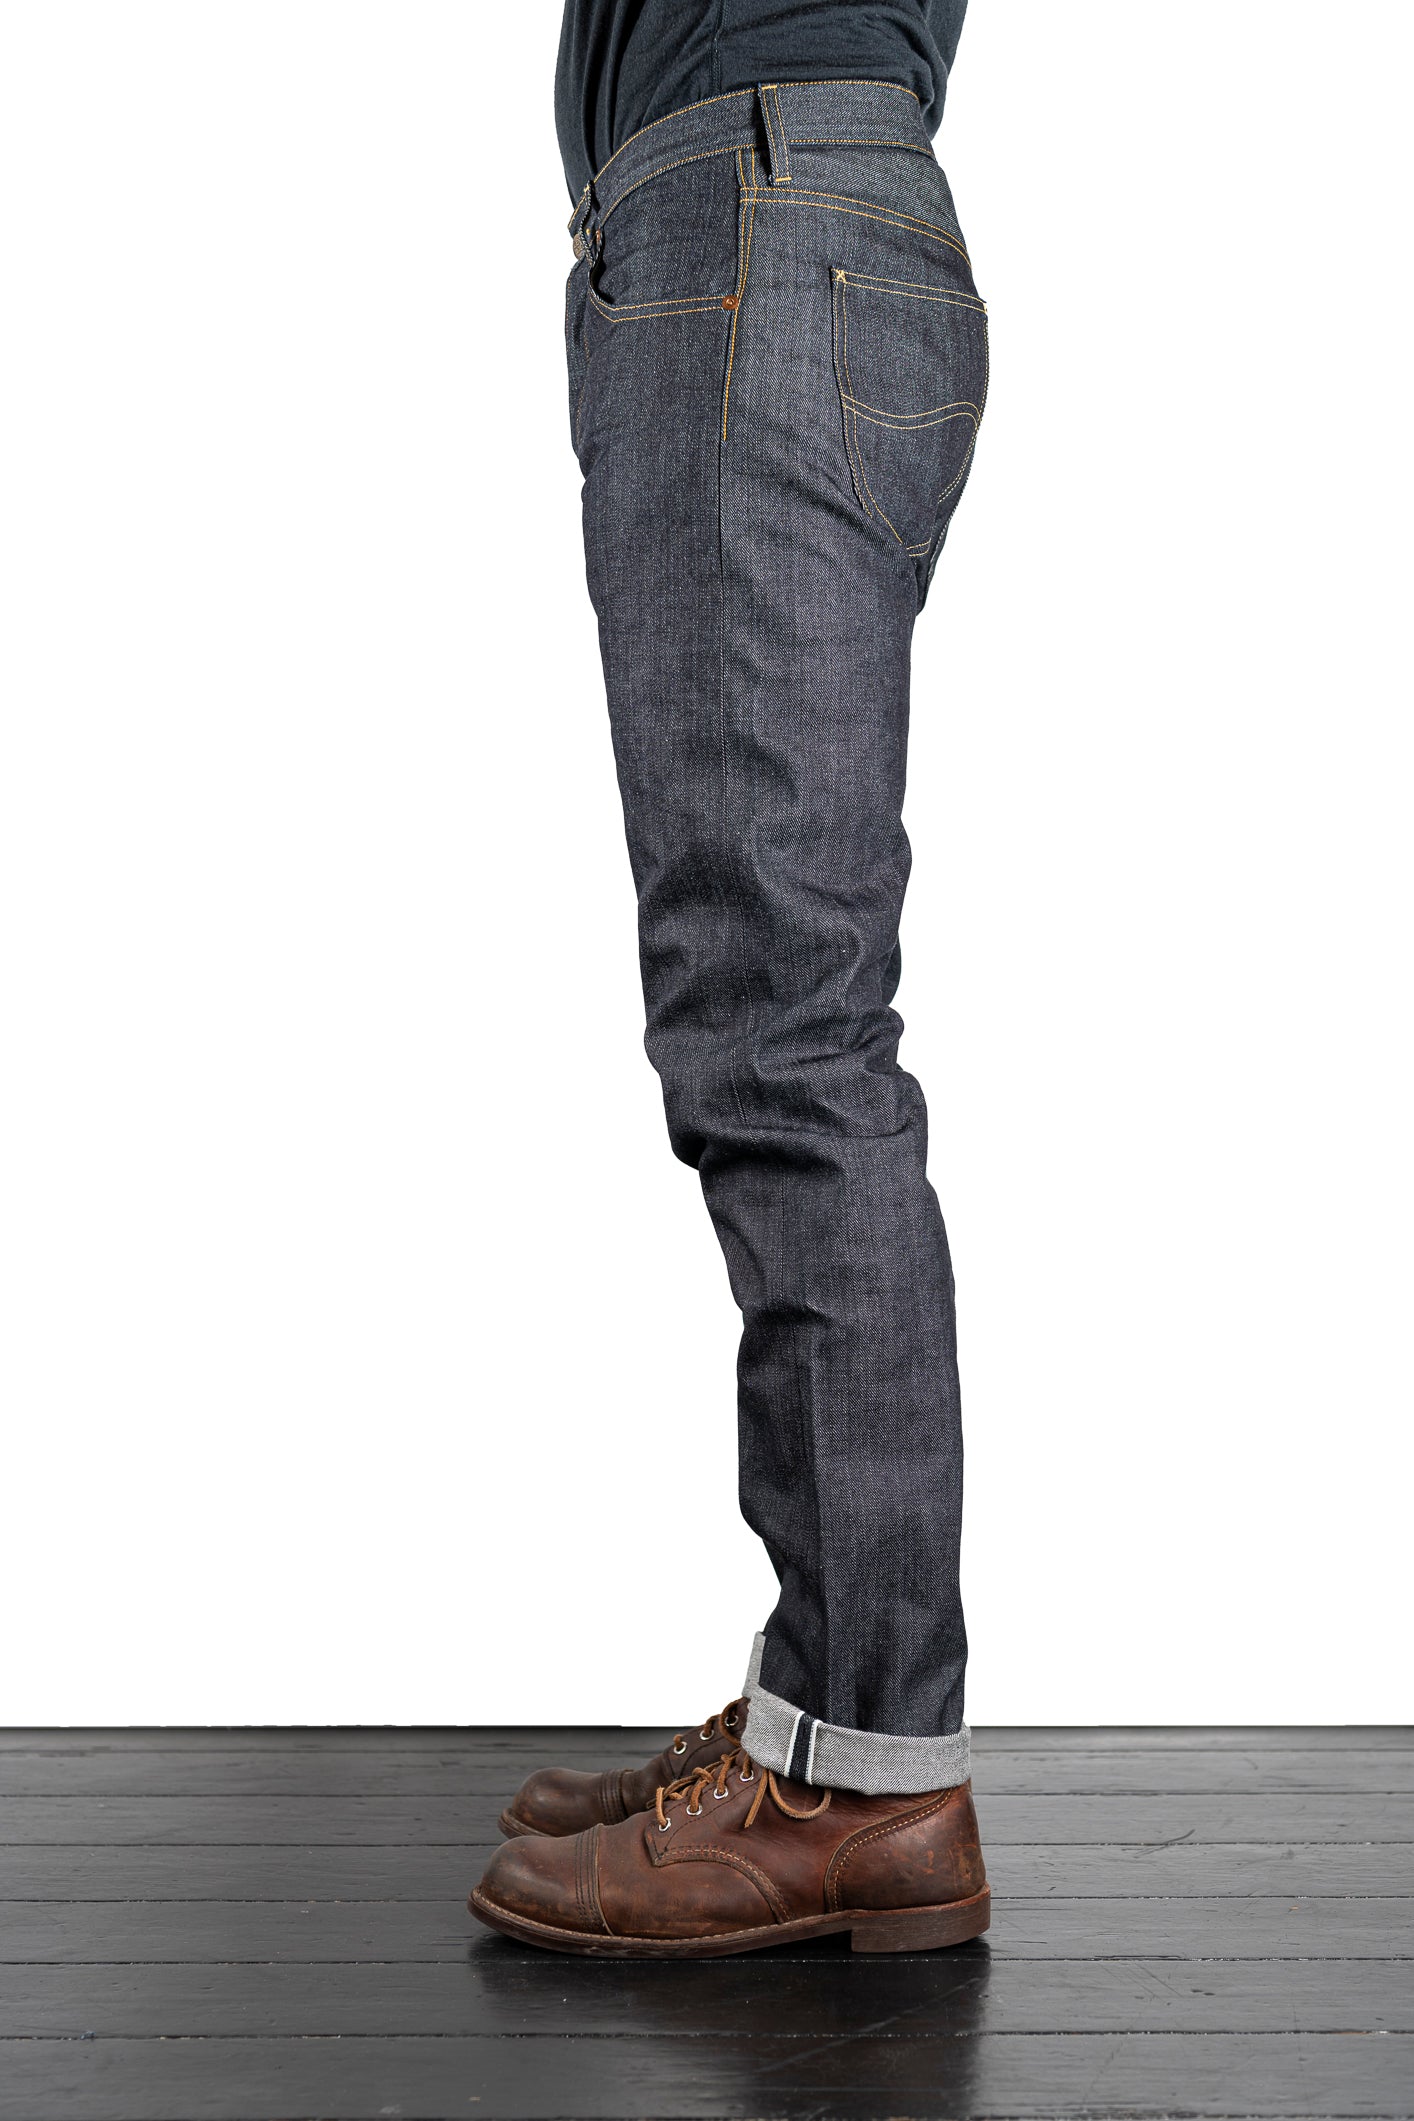 Lee 101 - 101 S Kaihara Jeans - Brund